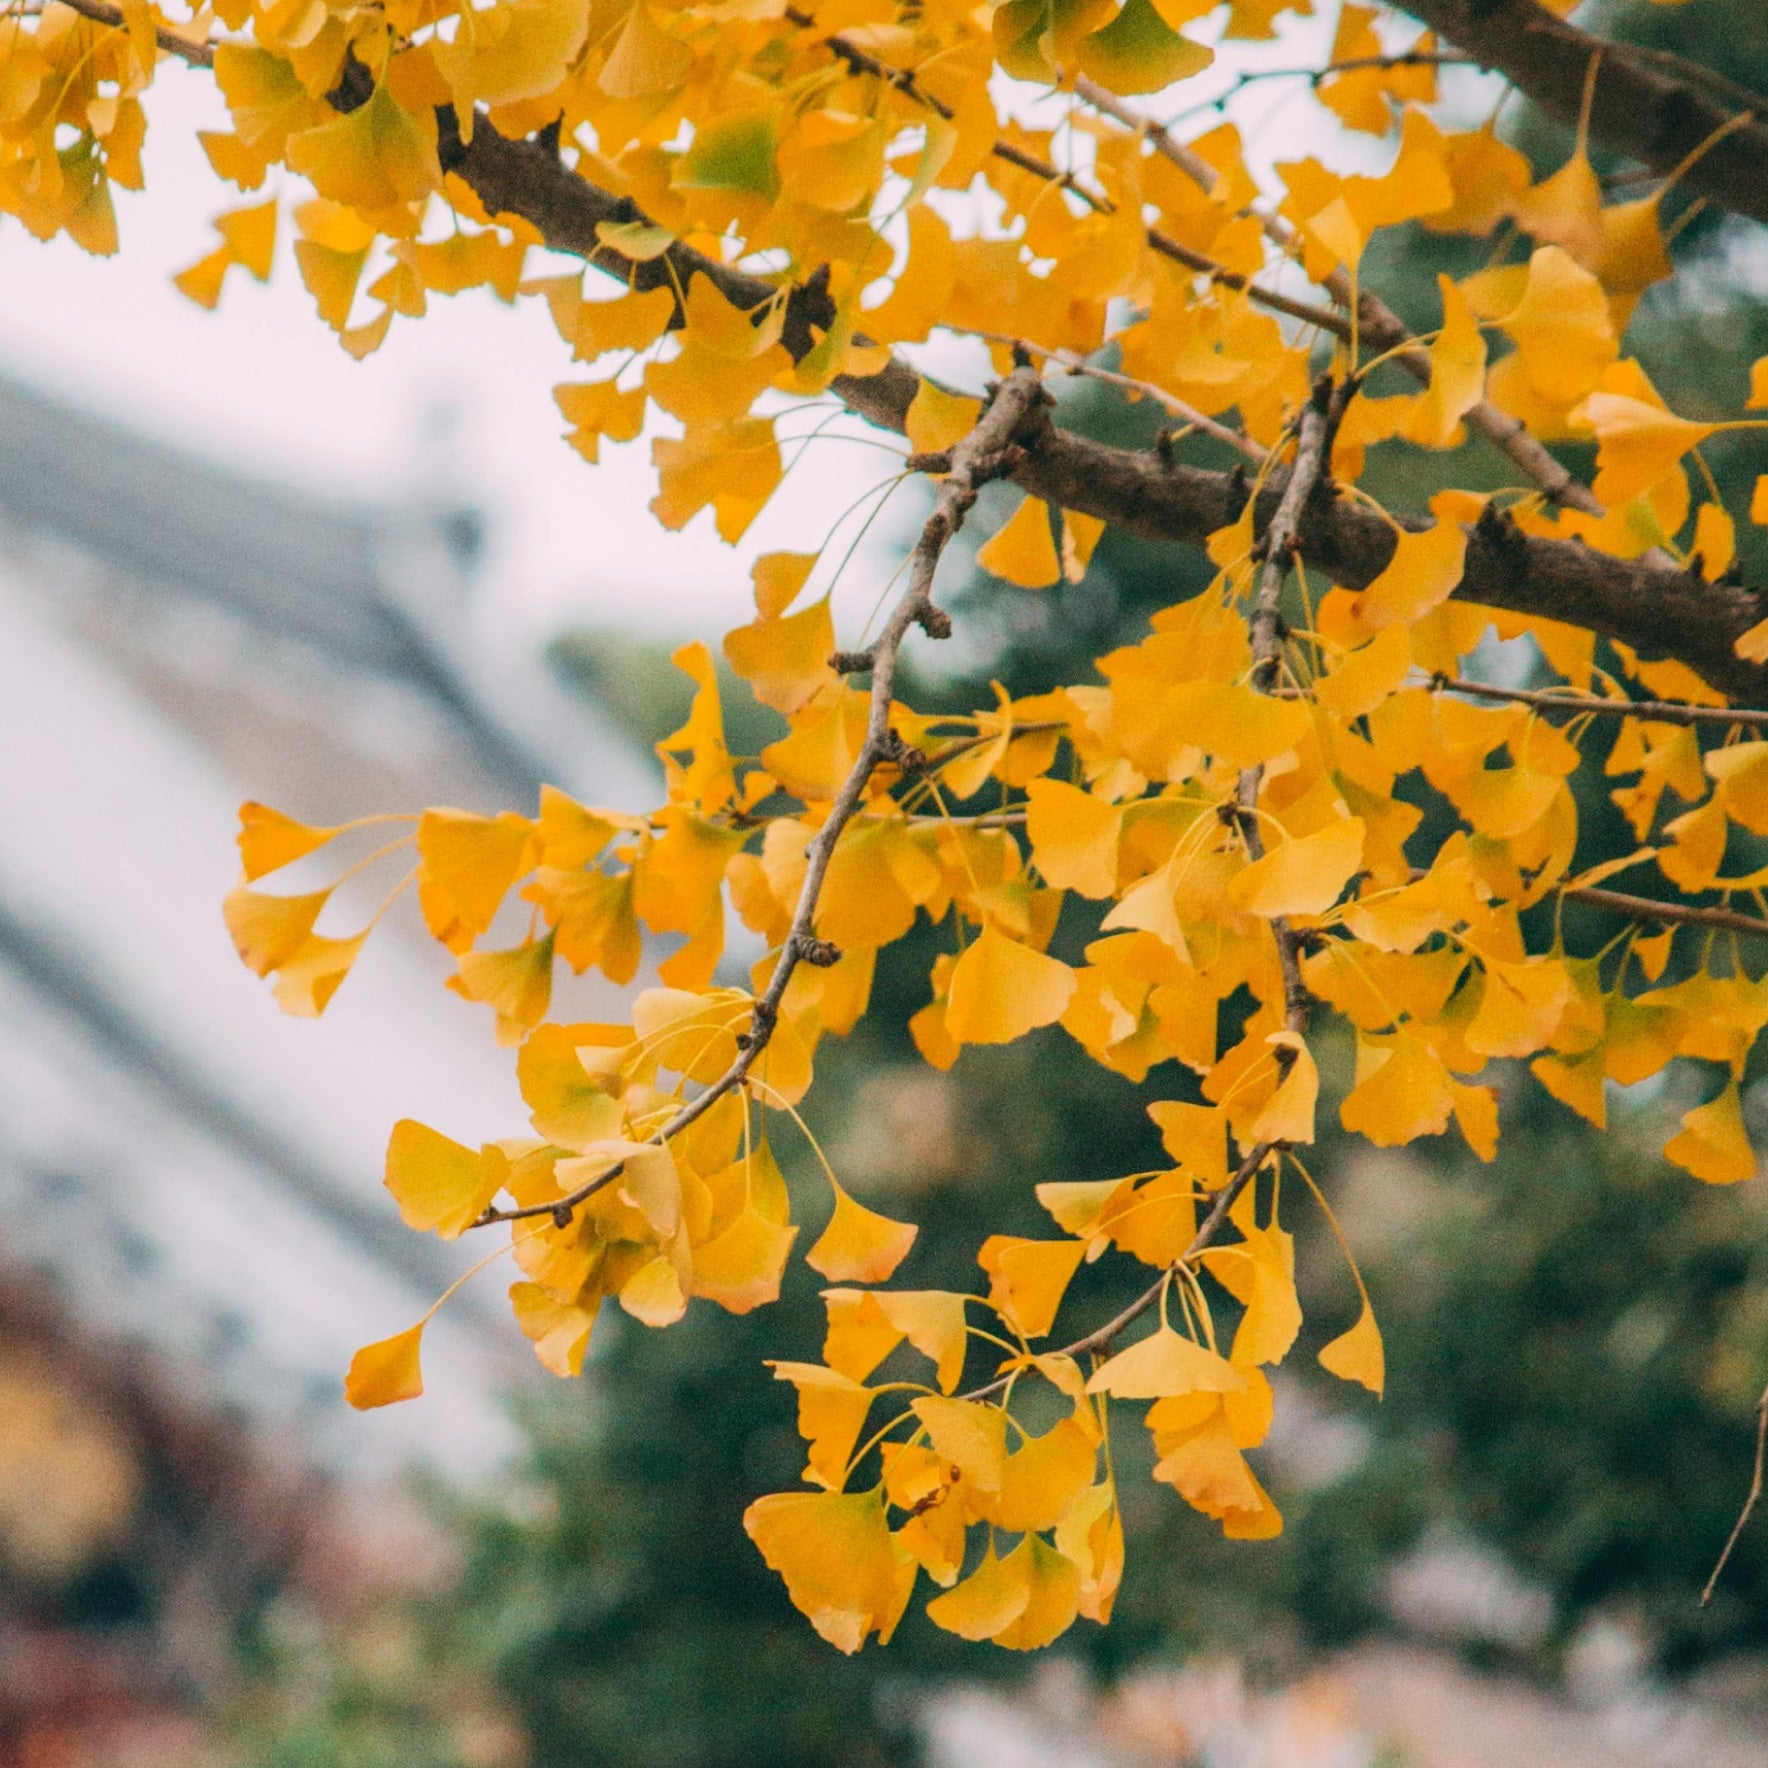 Gingko tree leaves turning yellow